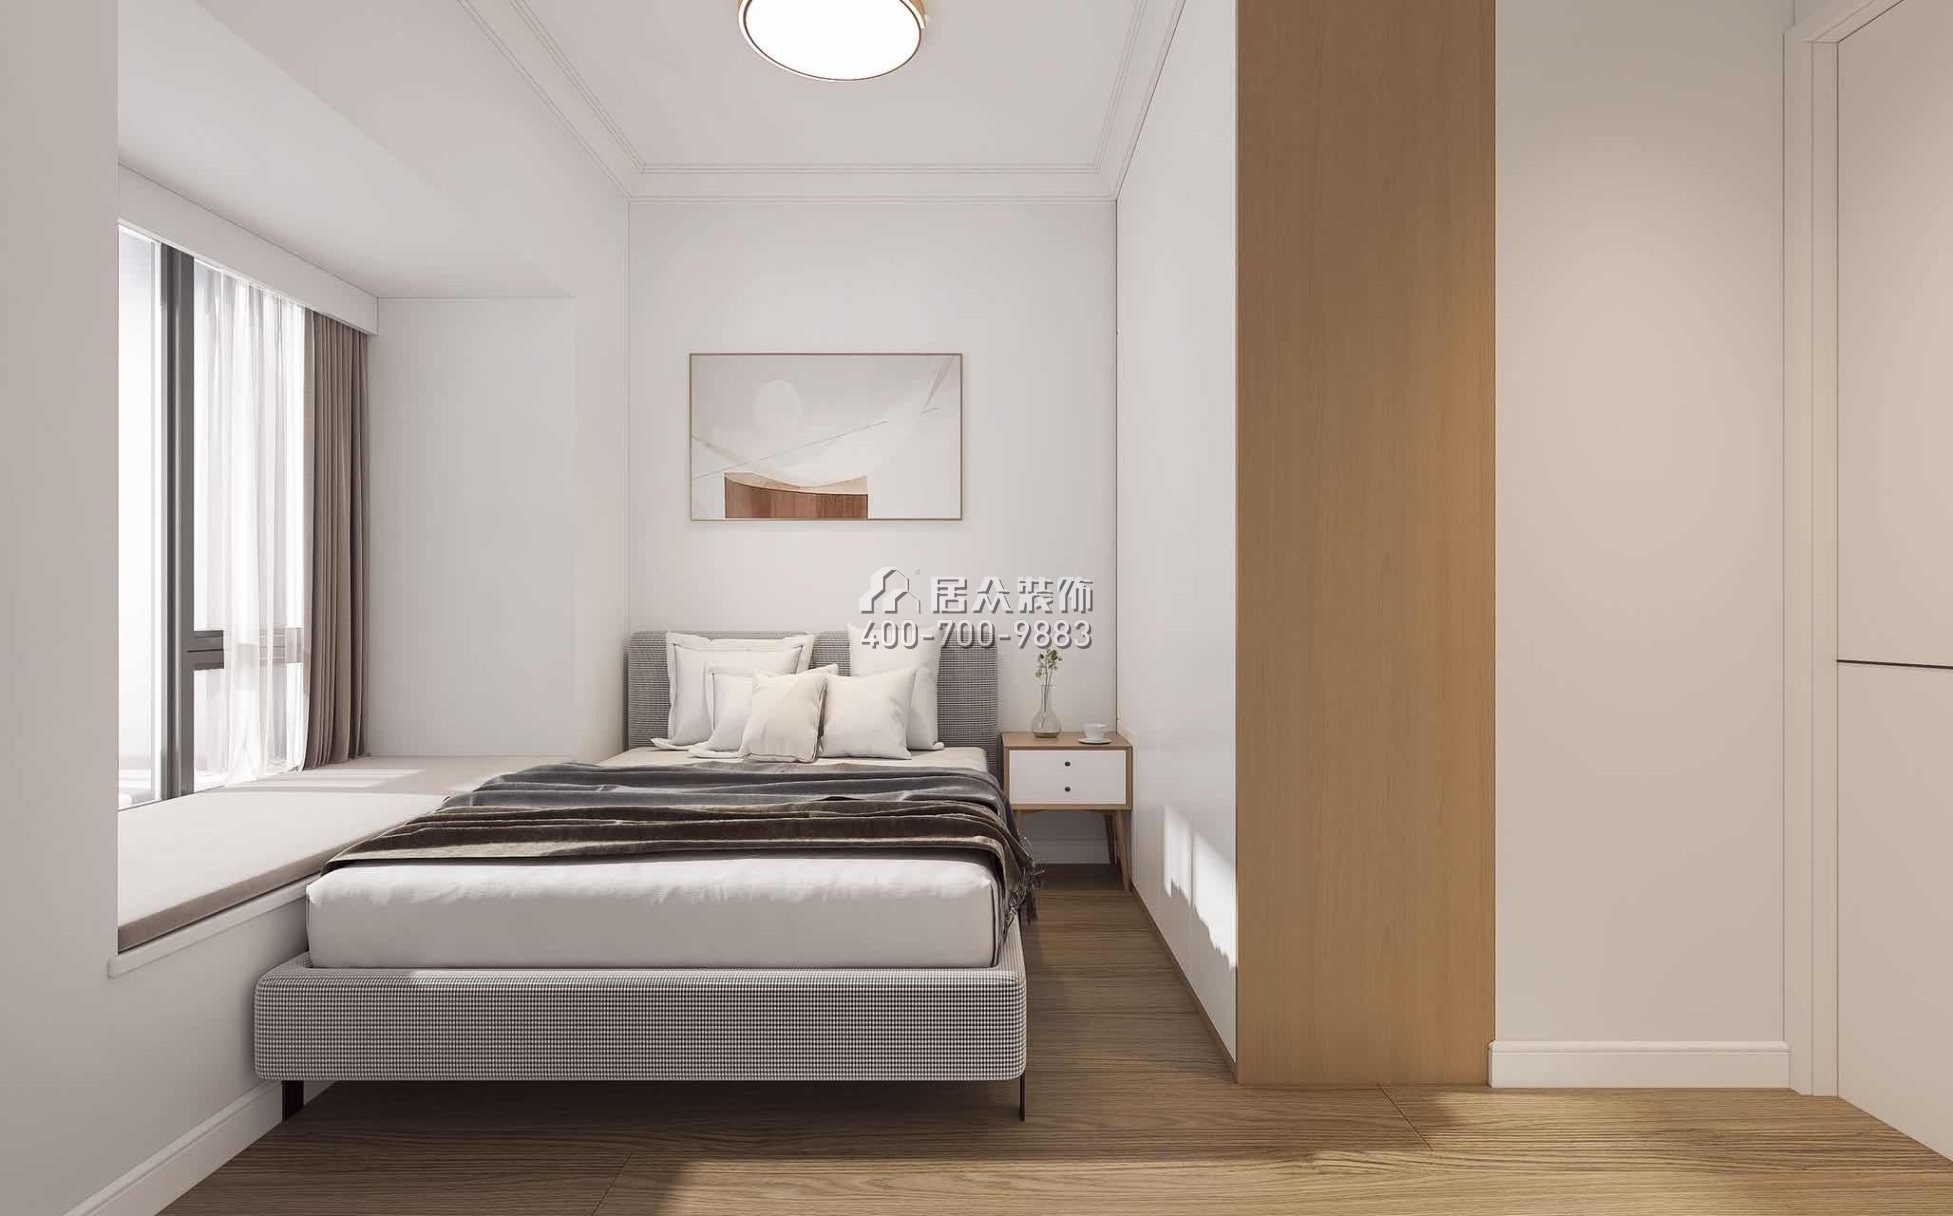 鼎太風華七期66平方米北歐風格平層戶型臥室裝修效果圖